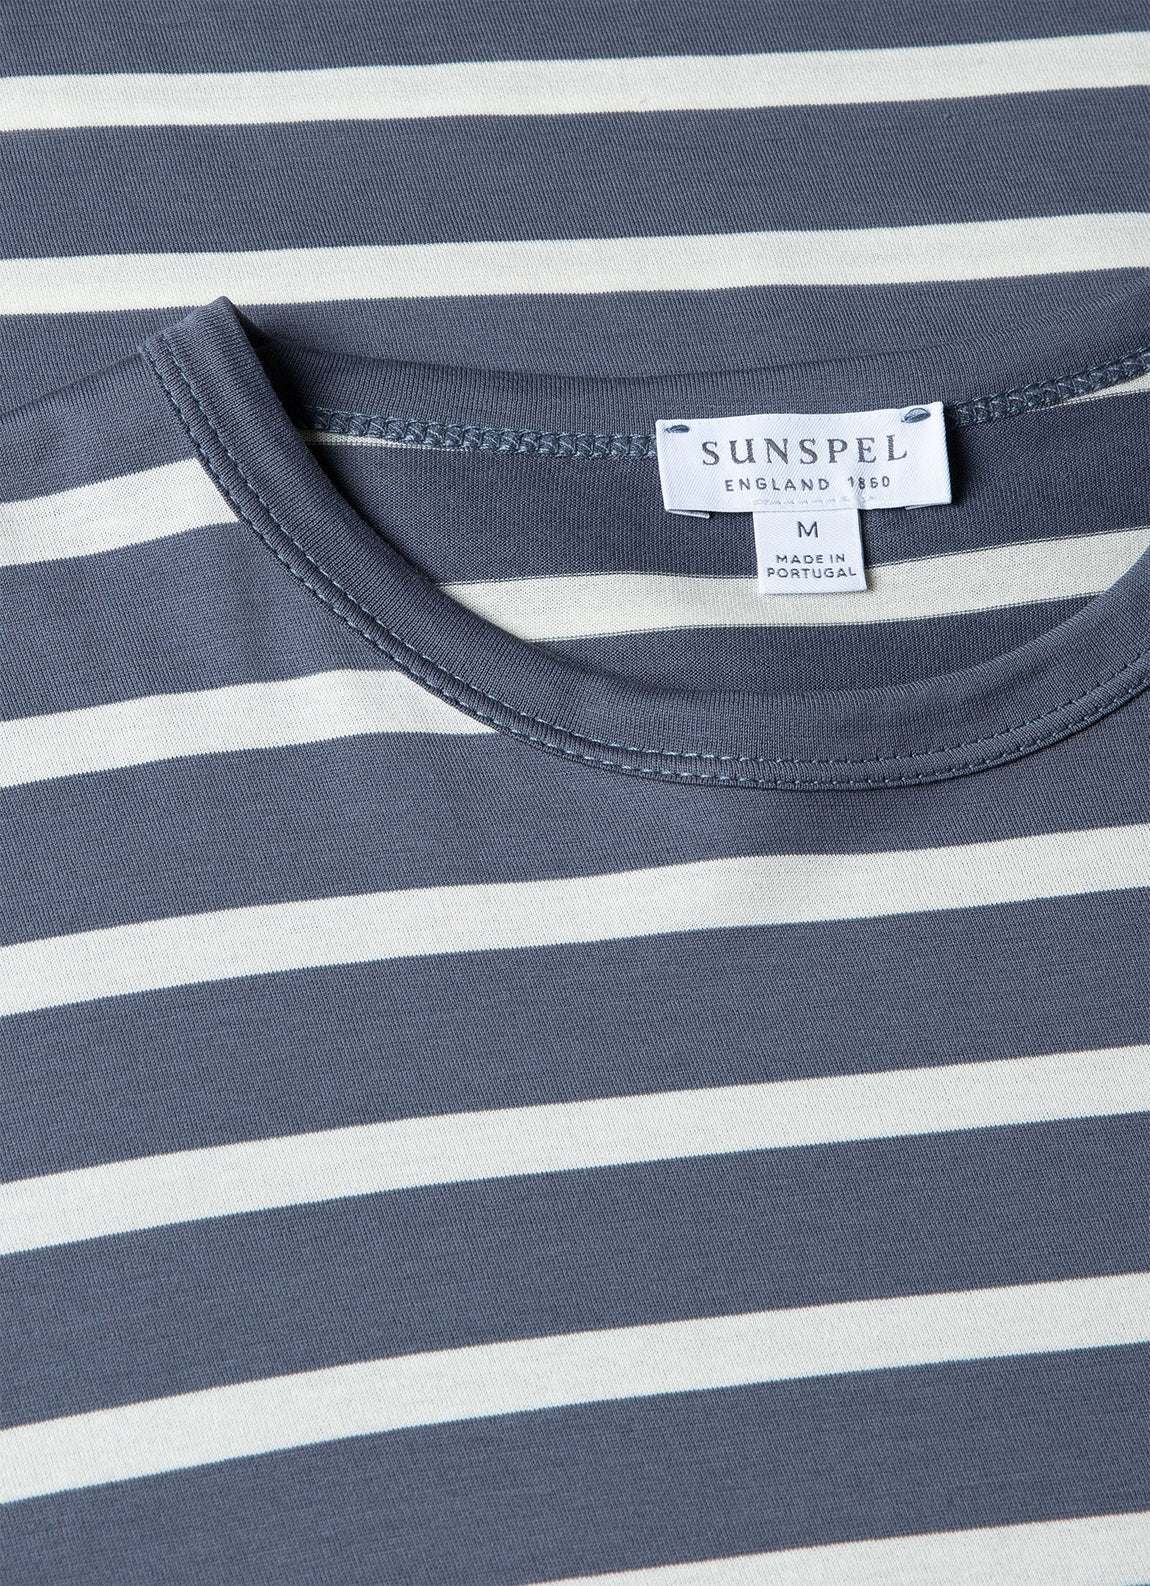 Men's Classic T-shirt in Slate Blue/Ecru Breton Stripe